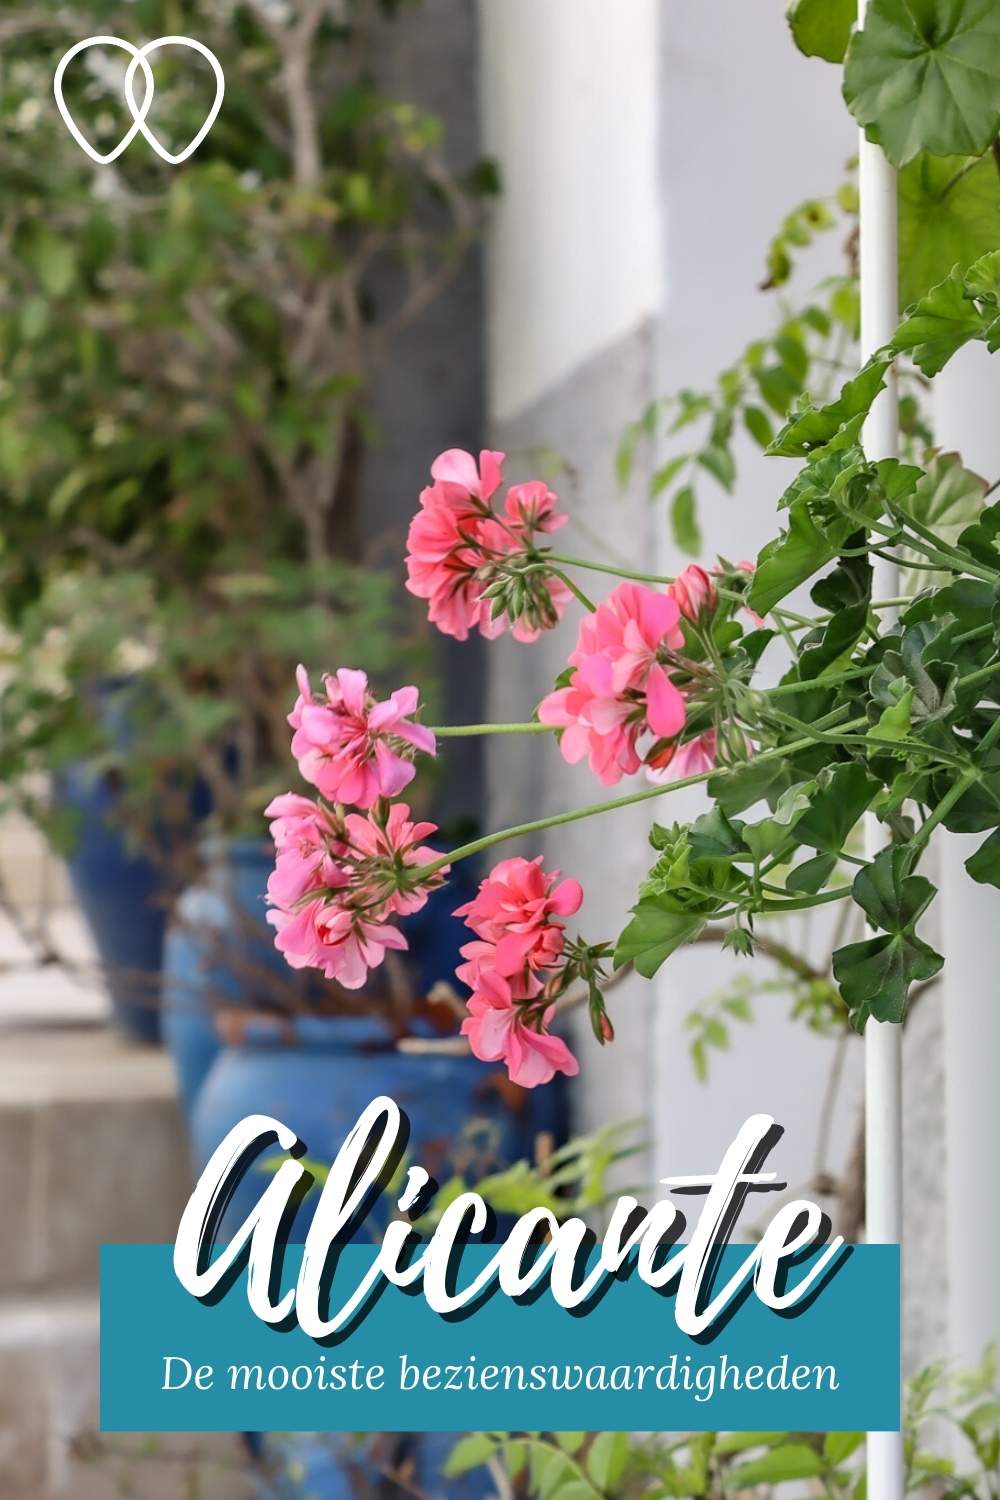 Alicante, Spanje: zin in een stedentrip Alicante? Ontdek de mooiste bezienswaardigheden in Alicante